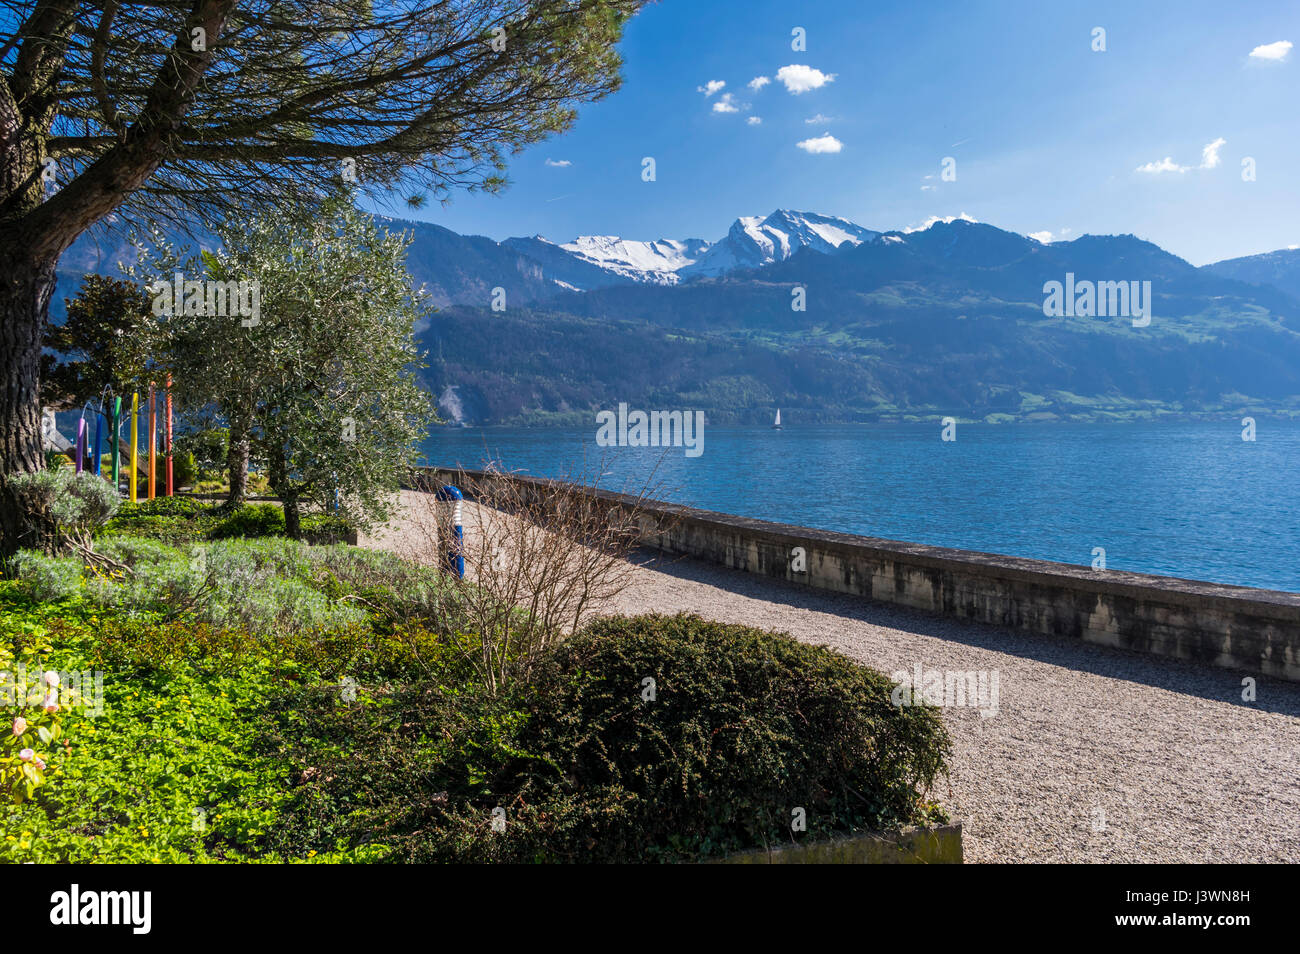 Vue sur le lac des Quatre-Cantons (Vierwaldstättersee) et les Alpes suisses depuis le waterfront park de Weggis, Suisse, sur une journée de printemps ensoleillée. Banque D'Images